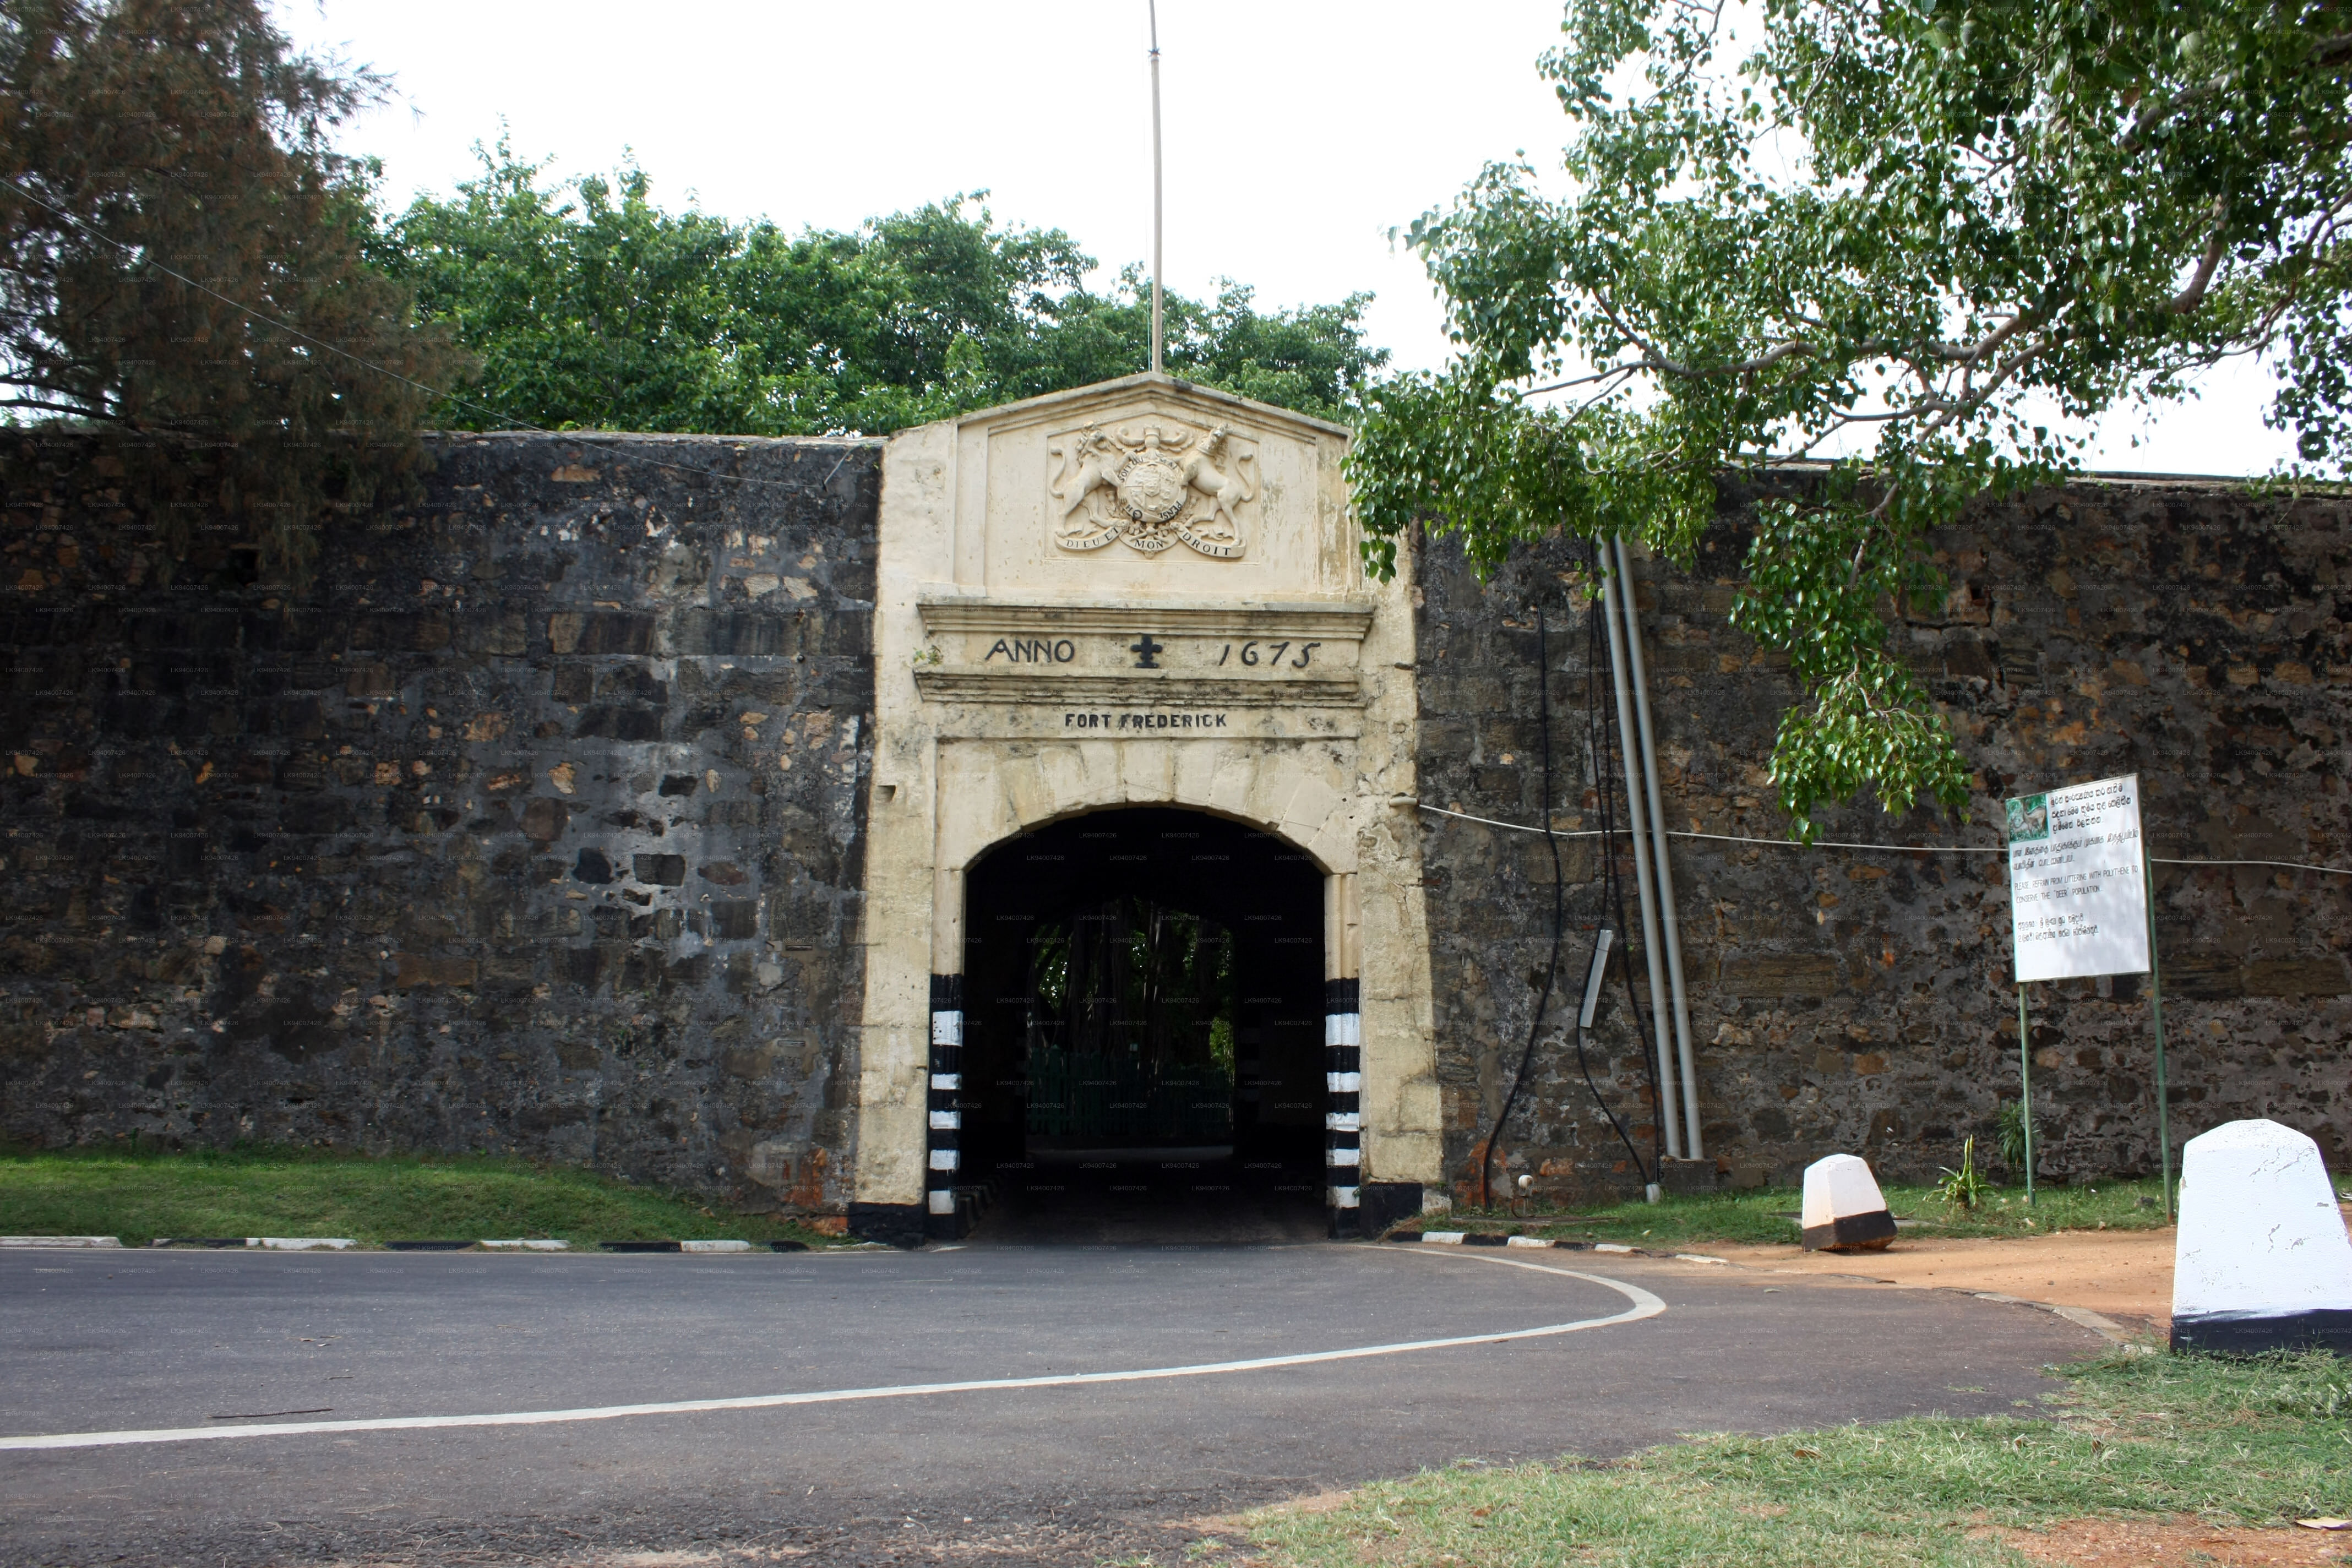 Ratnapura Fort